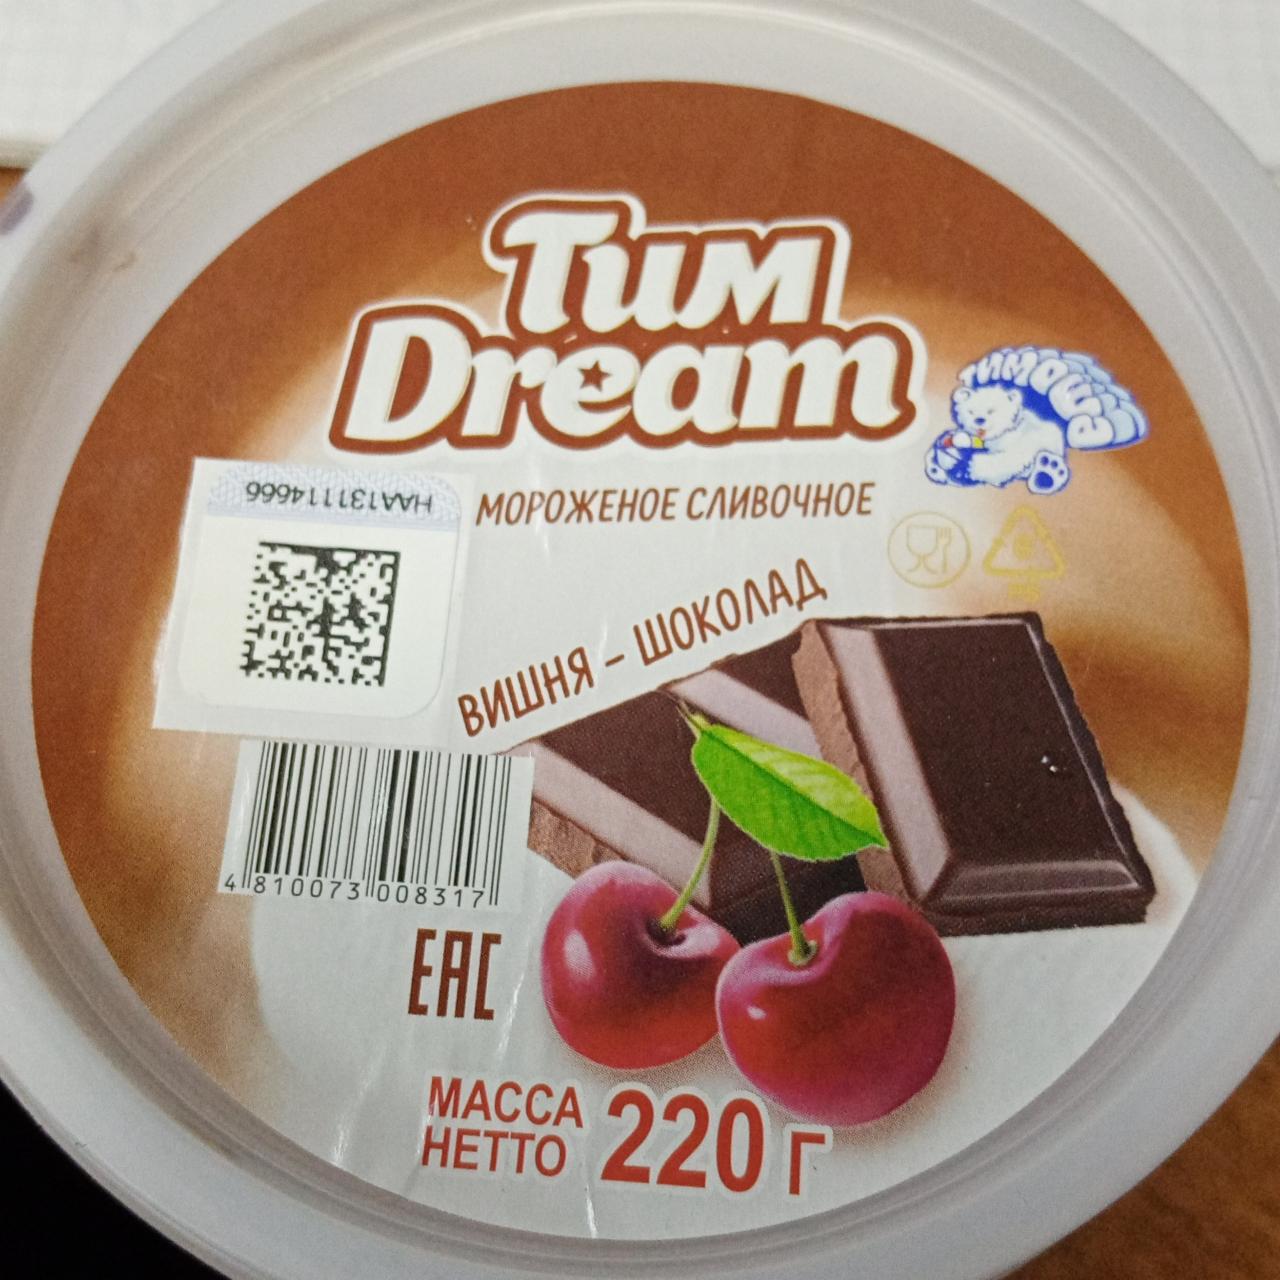 Фото - Мороженое сливочное с наполнителем вишня-шоколад Тим Dream Брестское мороженое